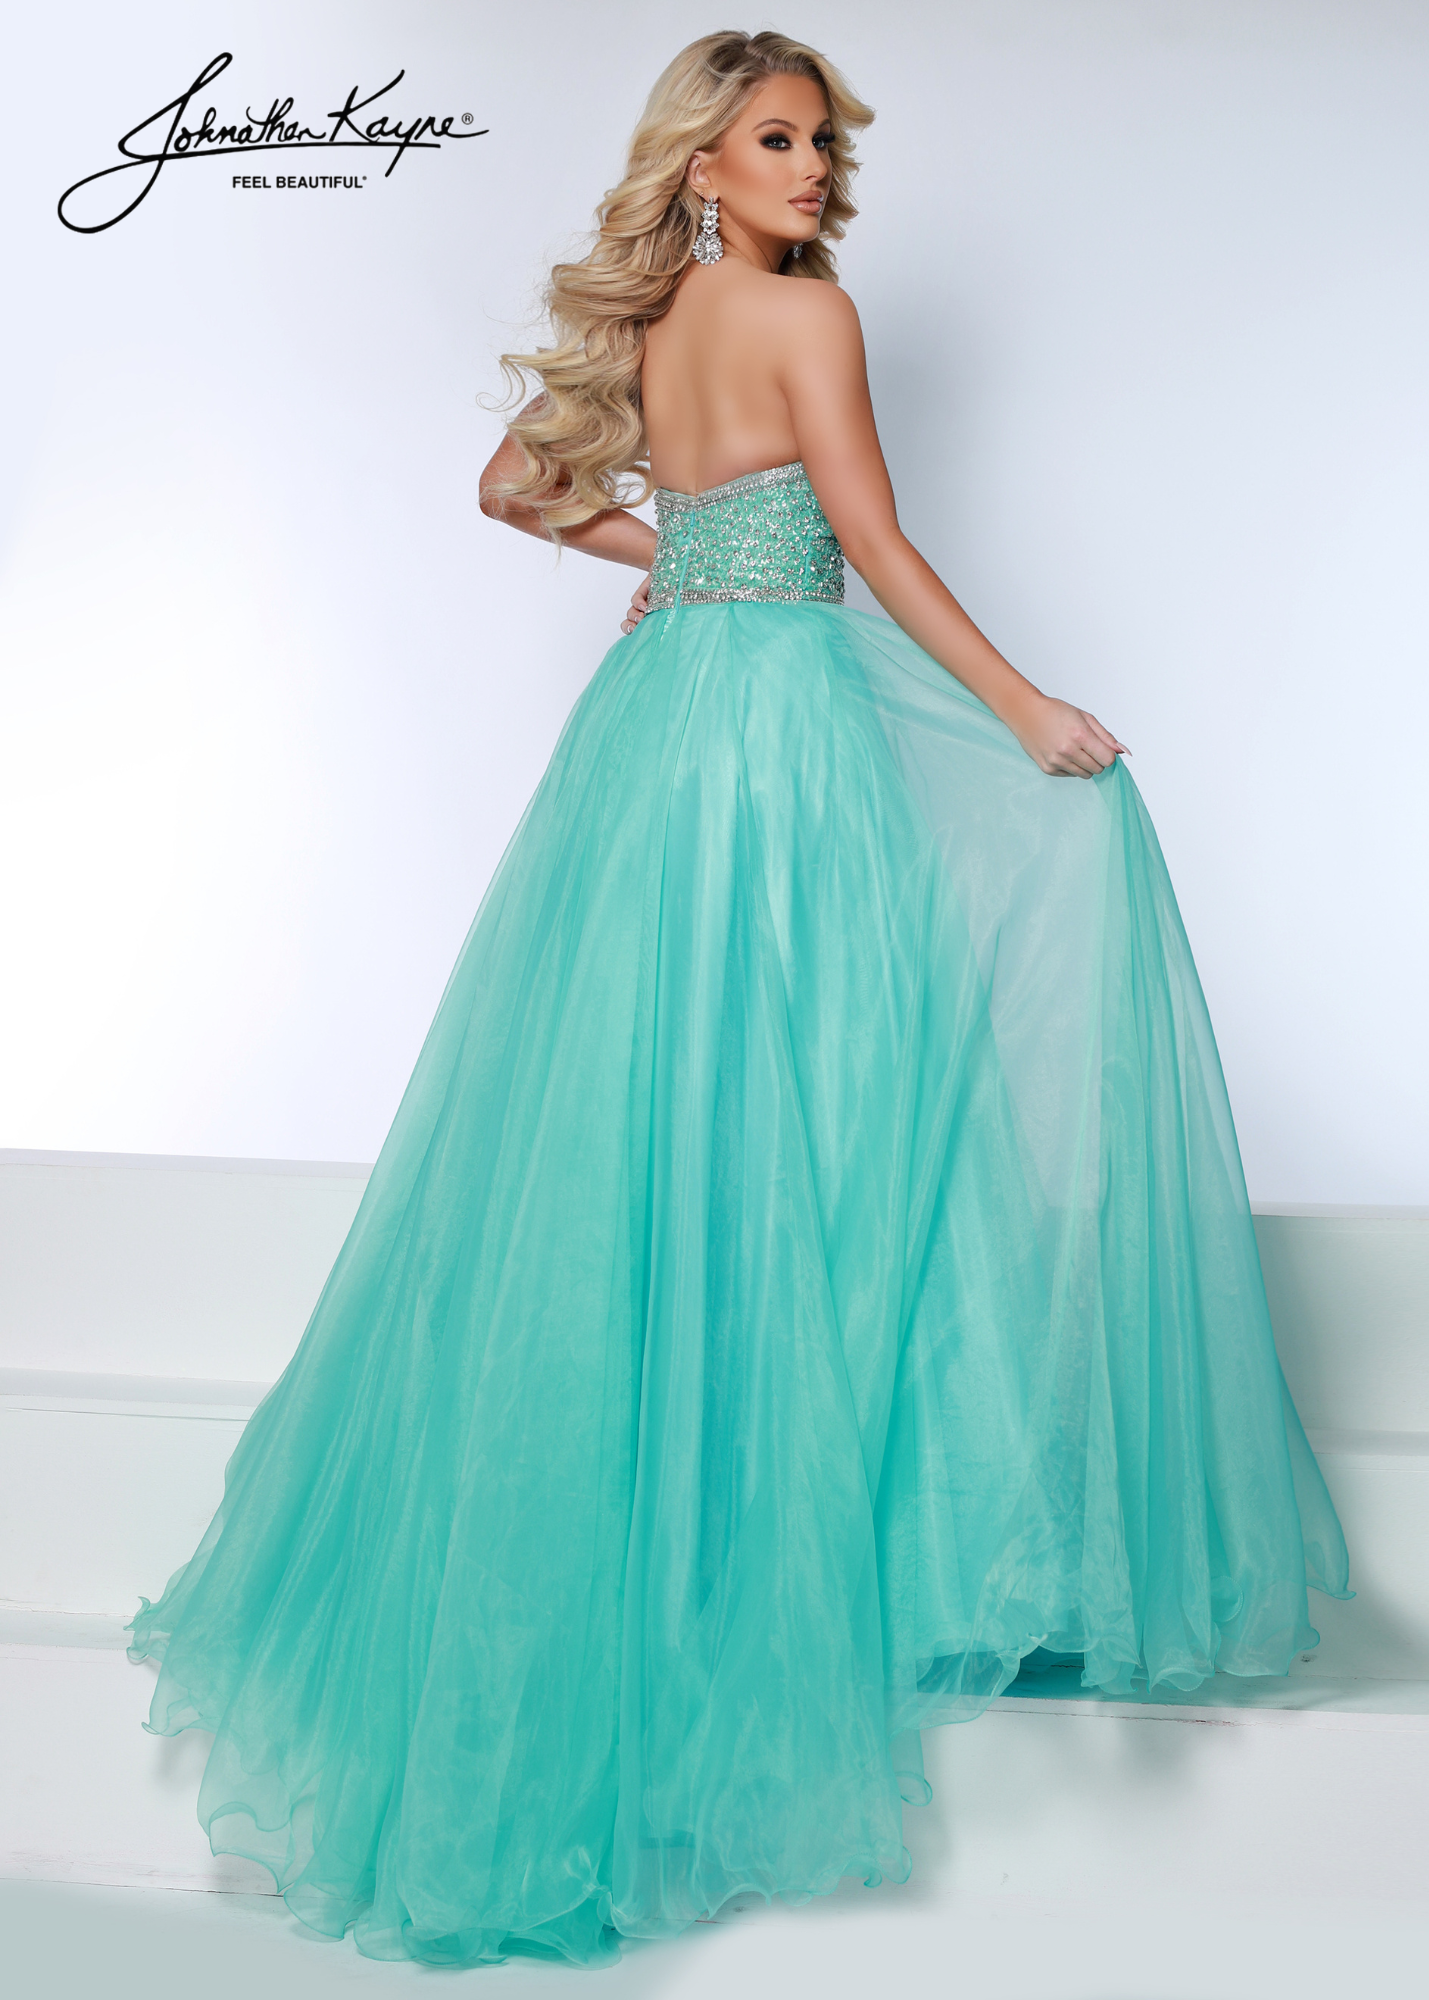 Fantasia Rhinestone-embellished dress - Dresses